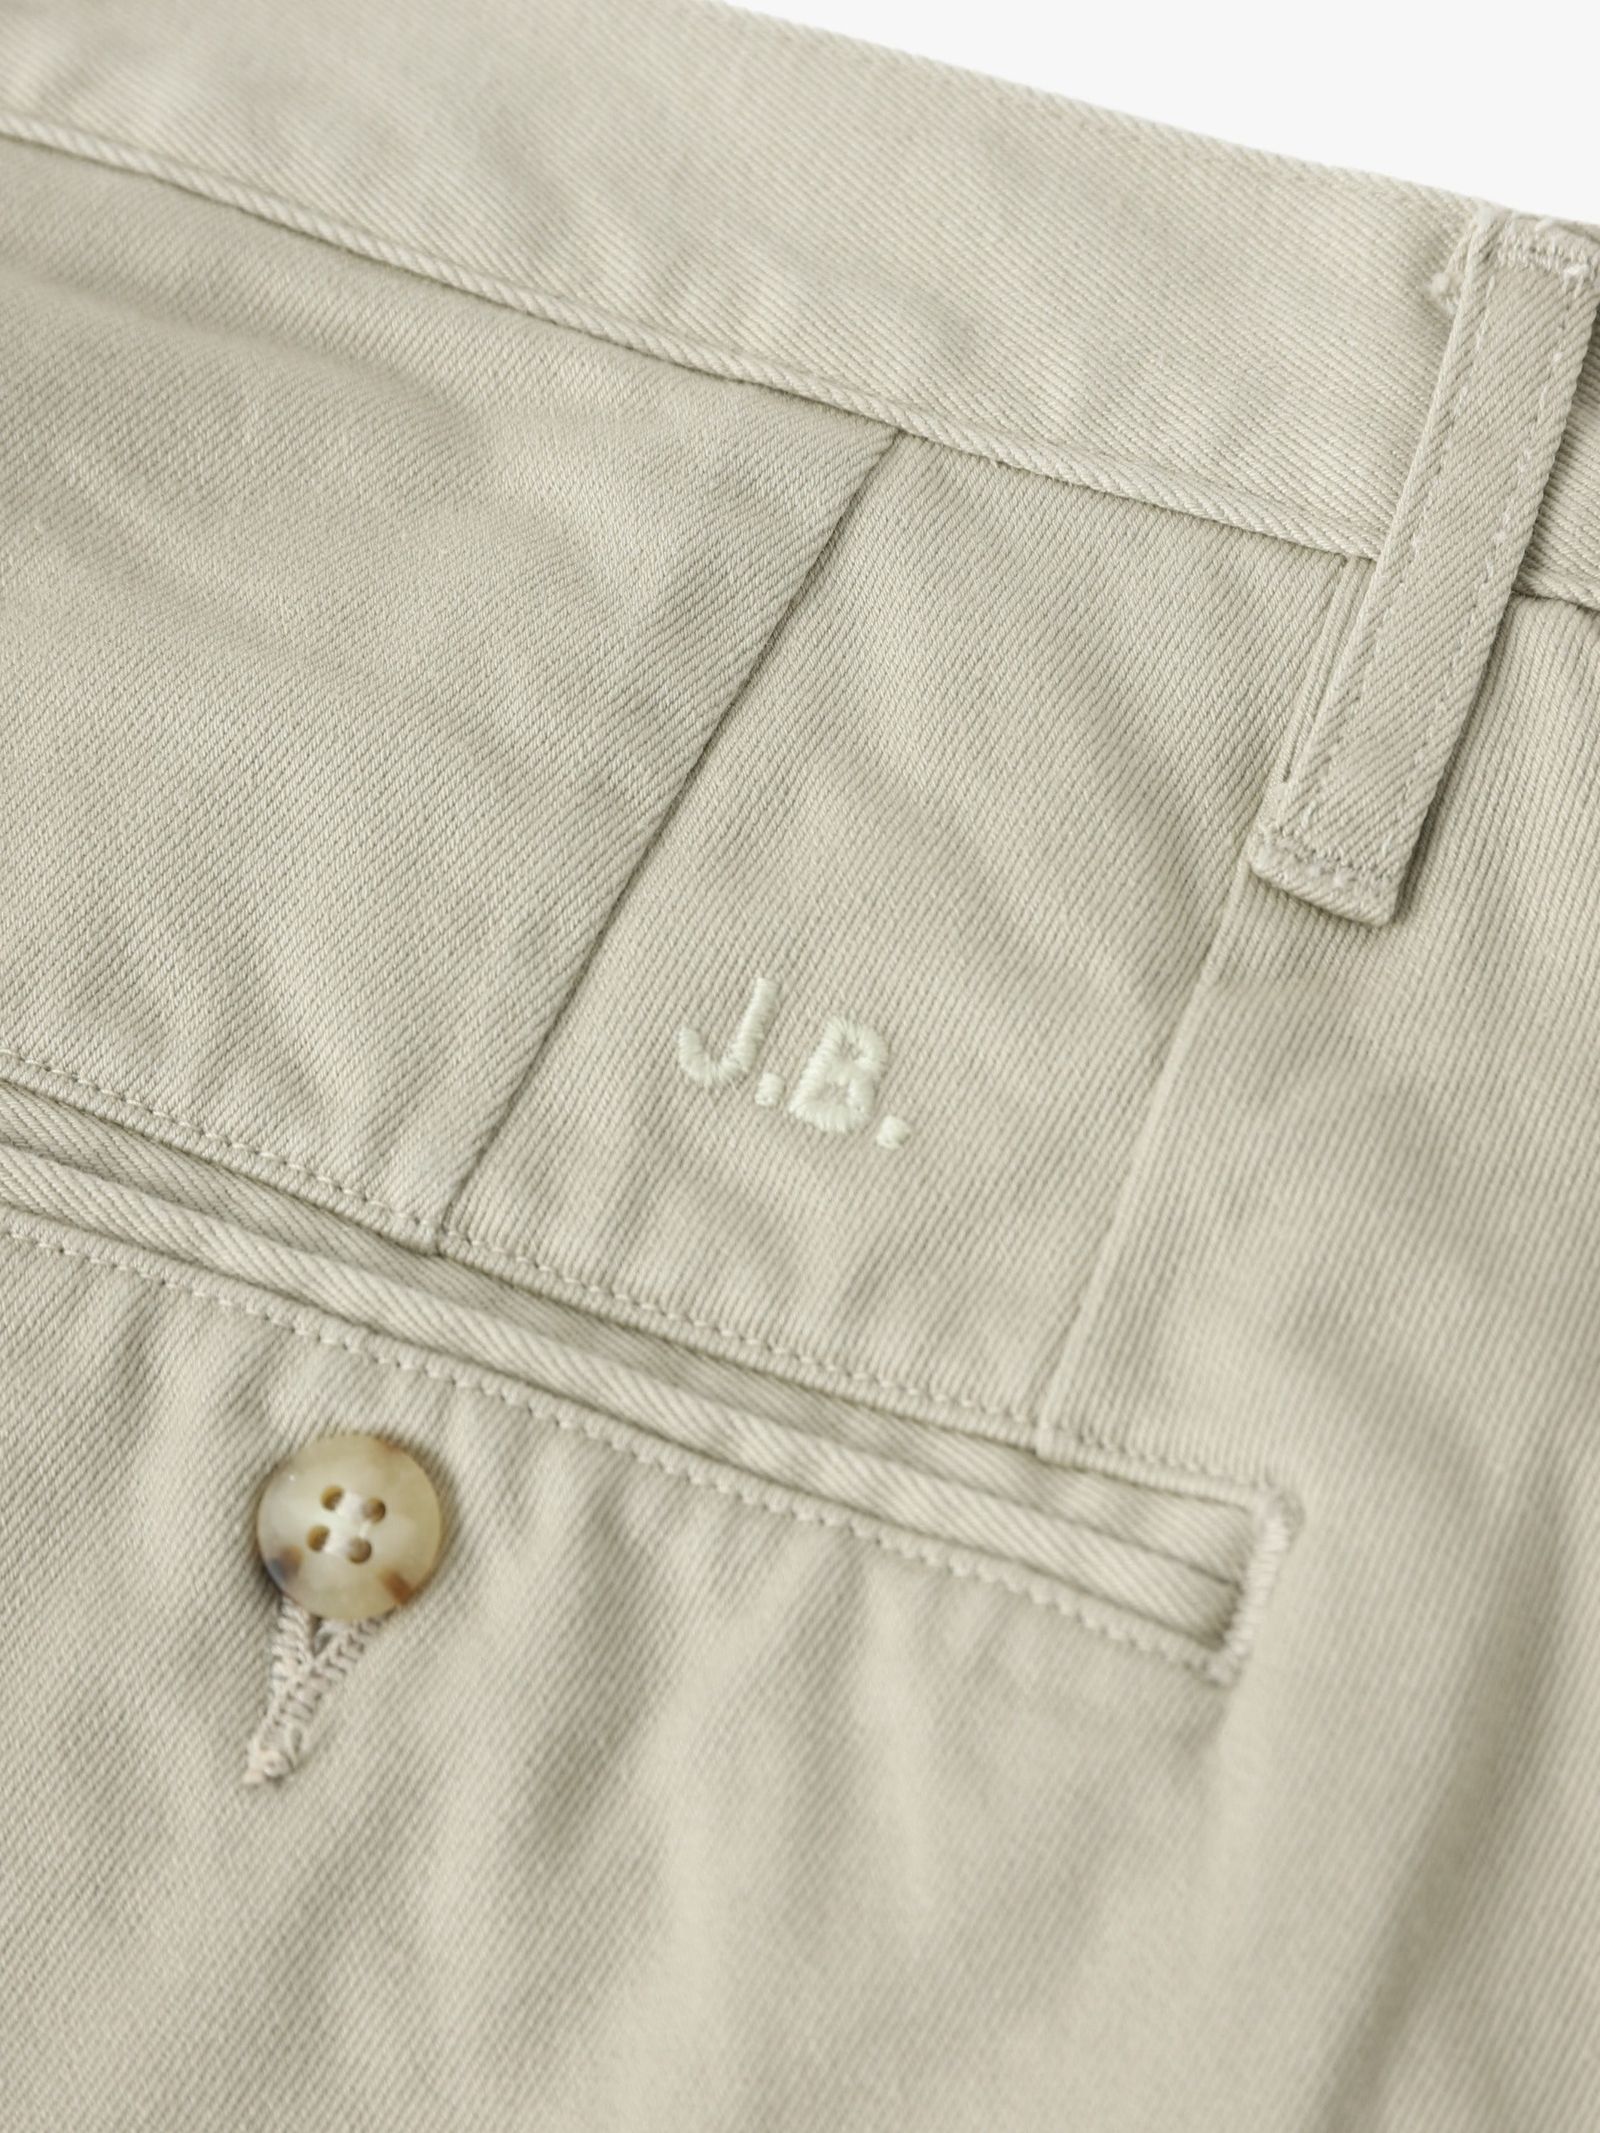 J.B. ATTIRE - J.B.ATTIRE 24SS Paris trouser(JSB-2406)Beige | mark